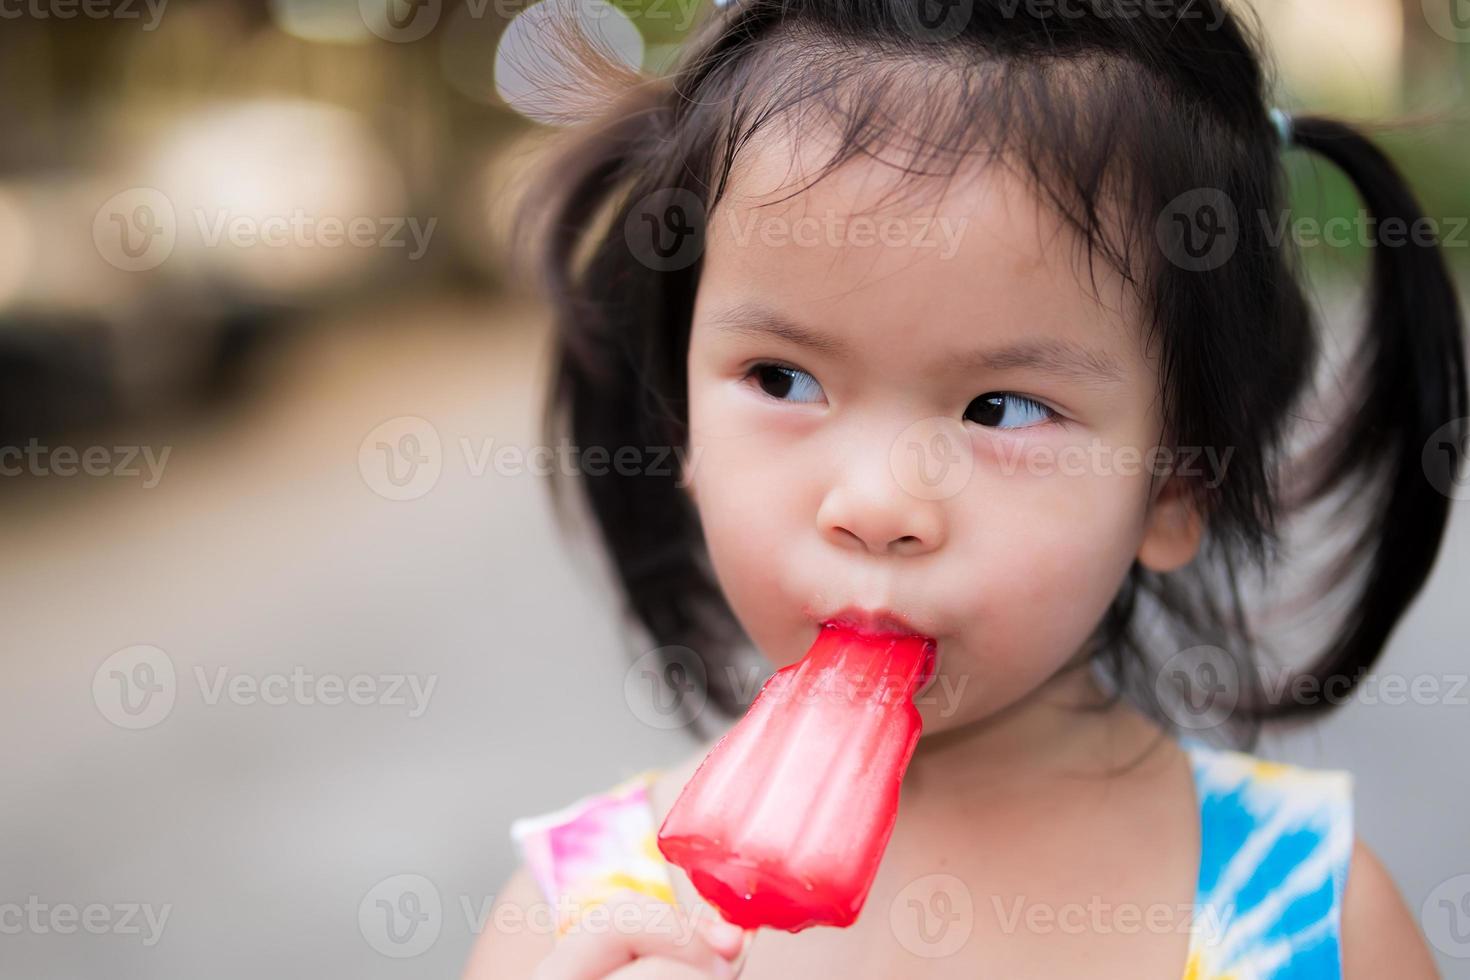 hoofdschot schattig Aziatisch klein kindmeisje dat rood ijs eet. kind van 3 jaar oud. in de zomer of lente. foto